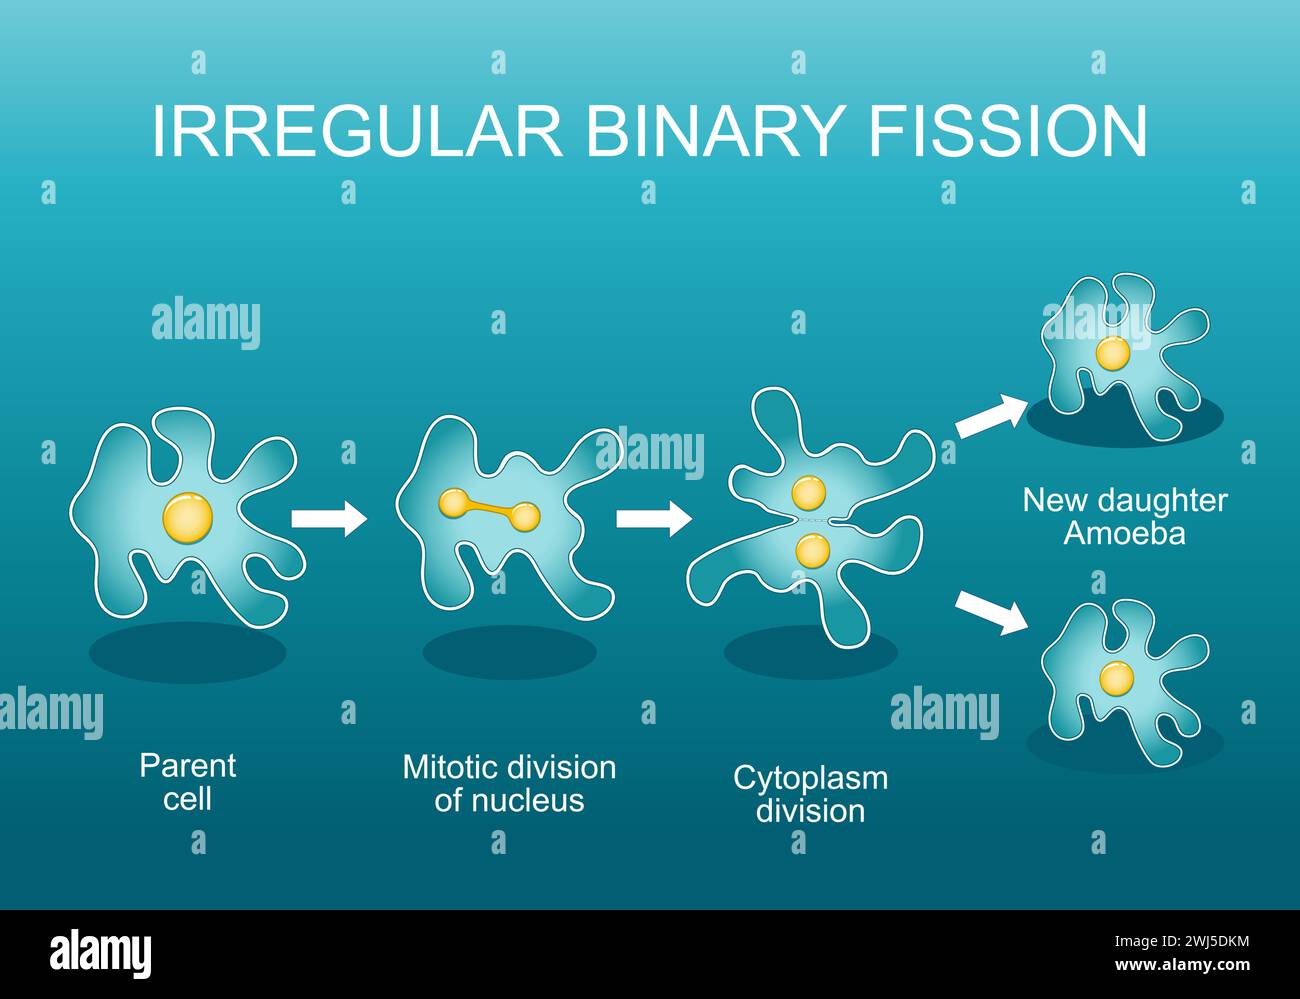 Fissione binaria irregolare in ameba. Riproduzione asessuale. Divisione cellulare. Adattamento evolutivo. Poster vettoriale. Illustrazione piatta isometrica. Illustrazione Vettoriale